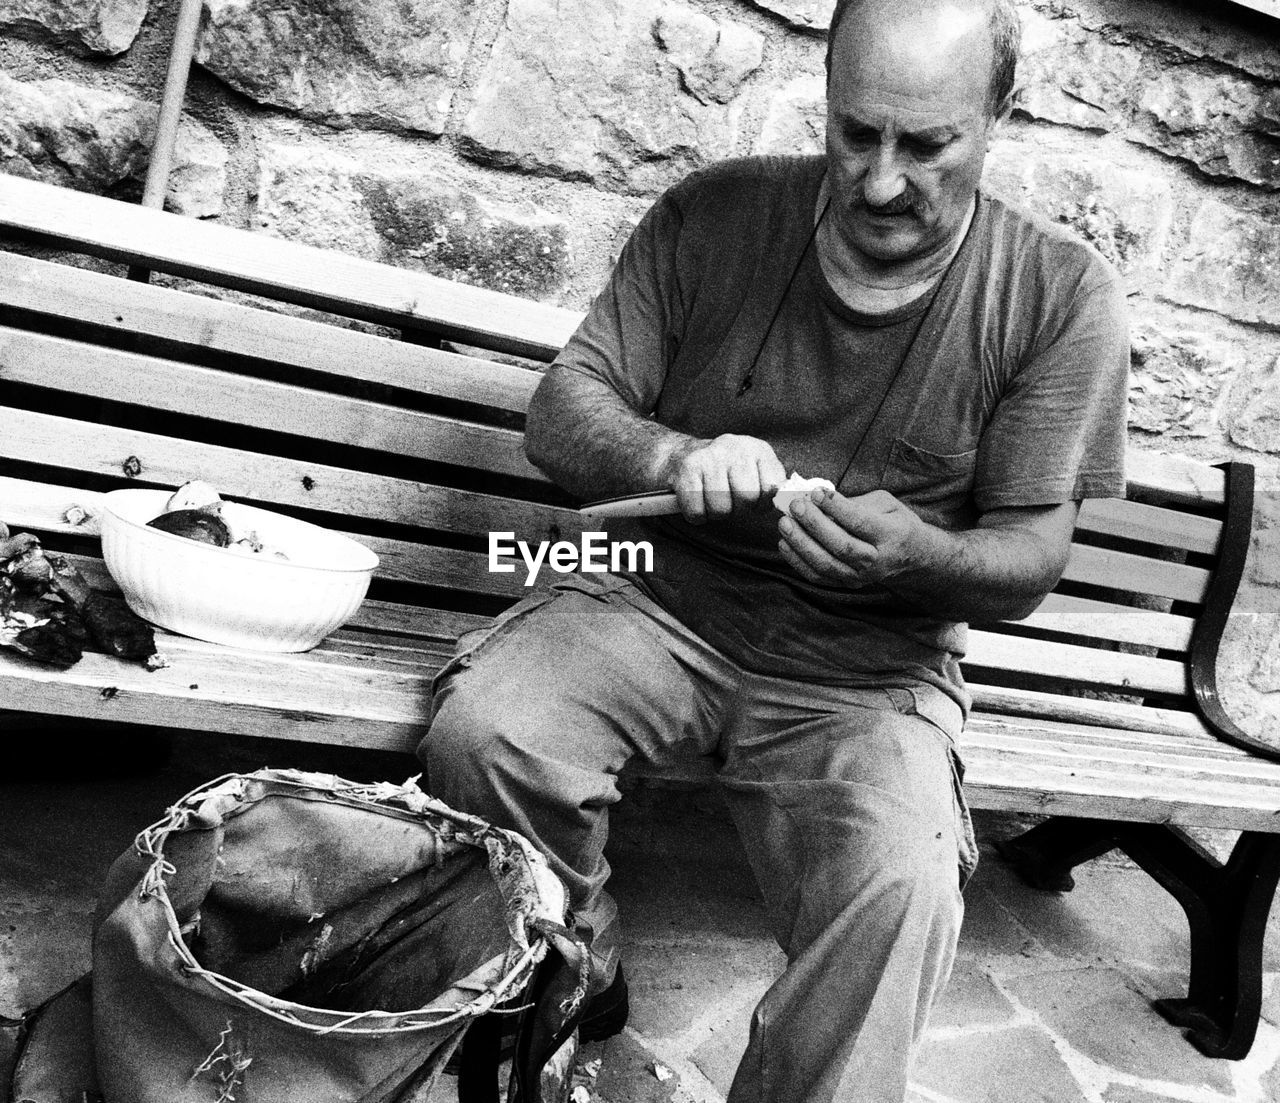 Tilt shot of man peeling mushrooms while sitting on bench